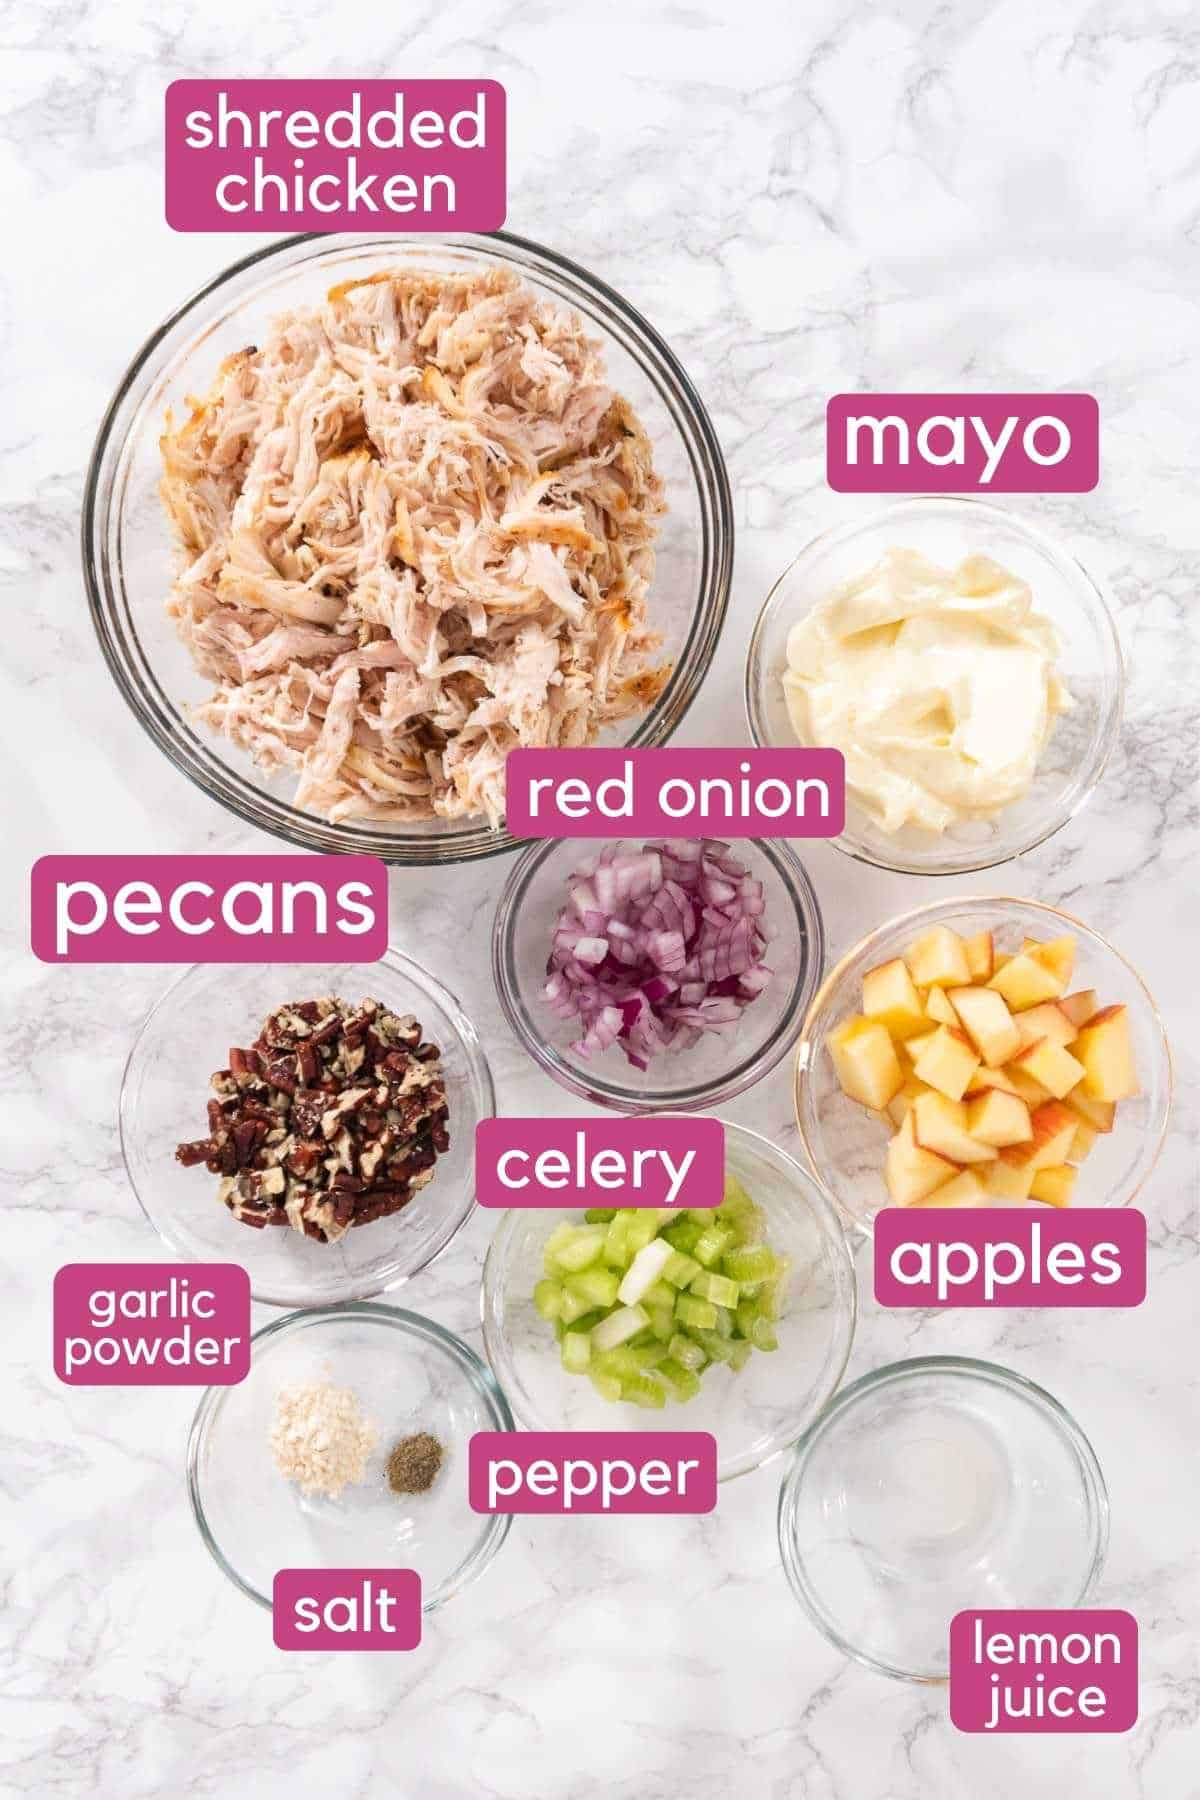 Apple Pecan Chicken Salad Ingredients.